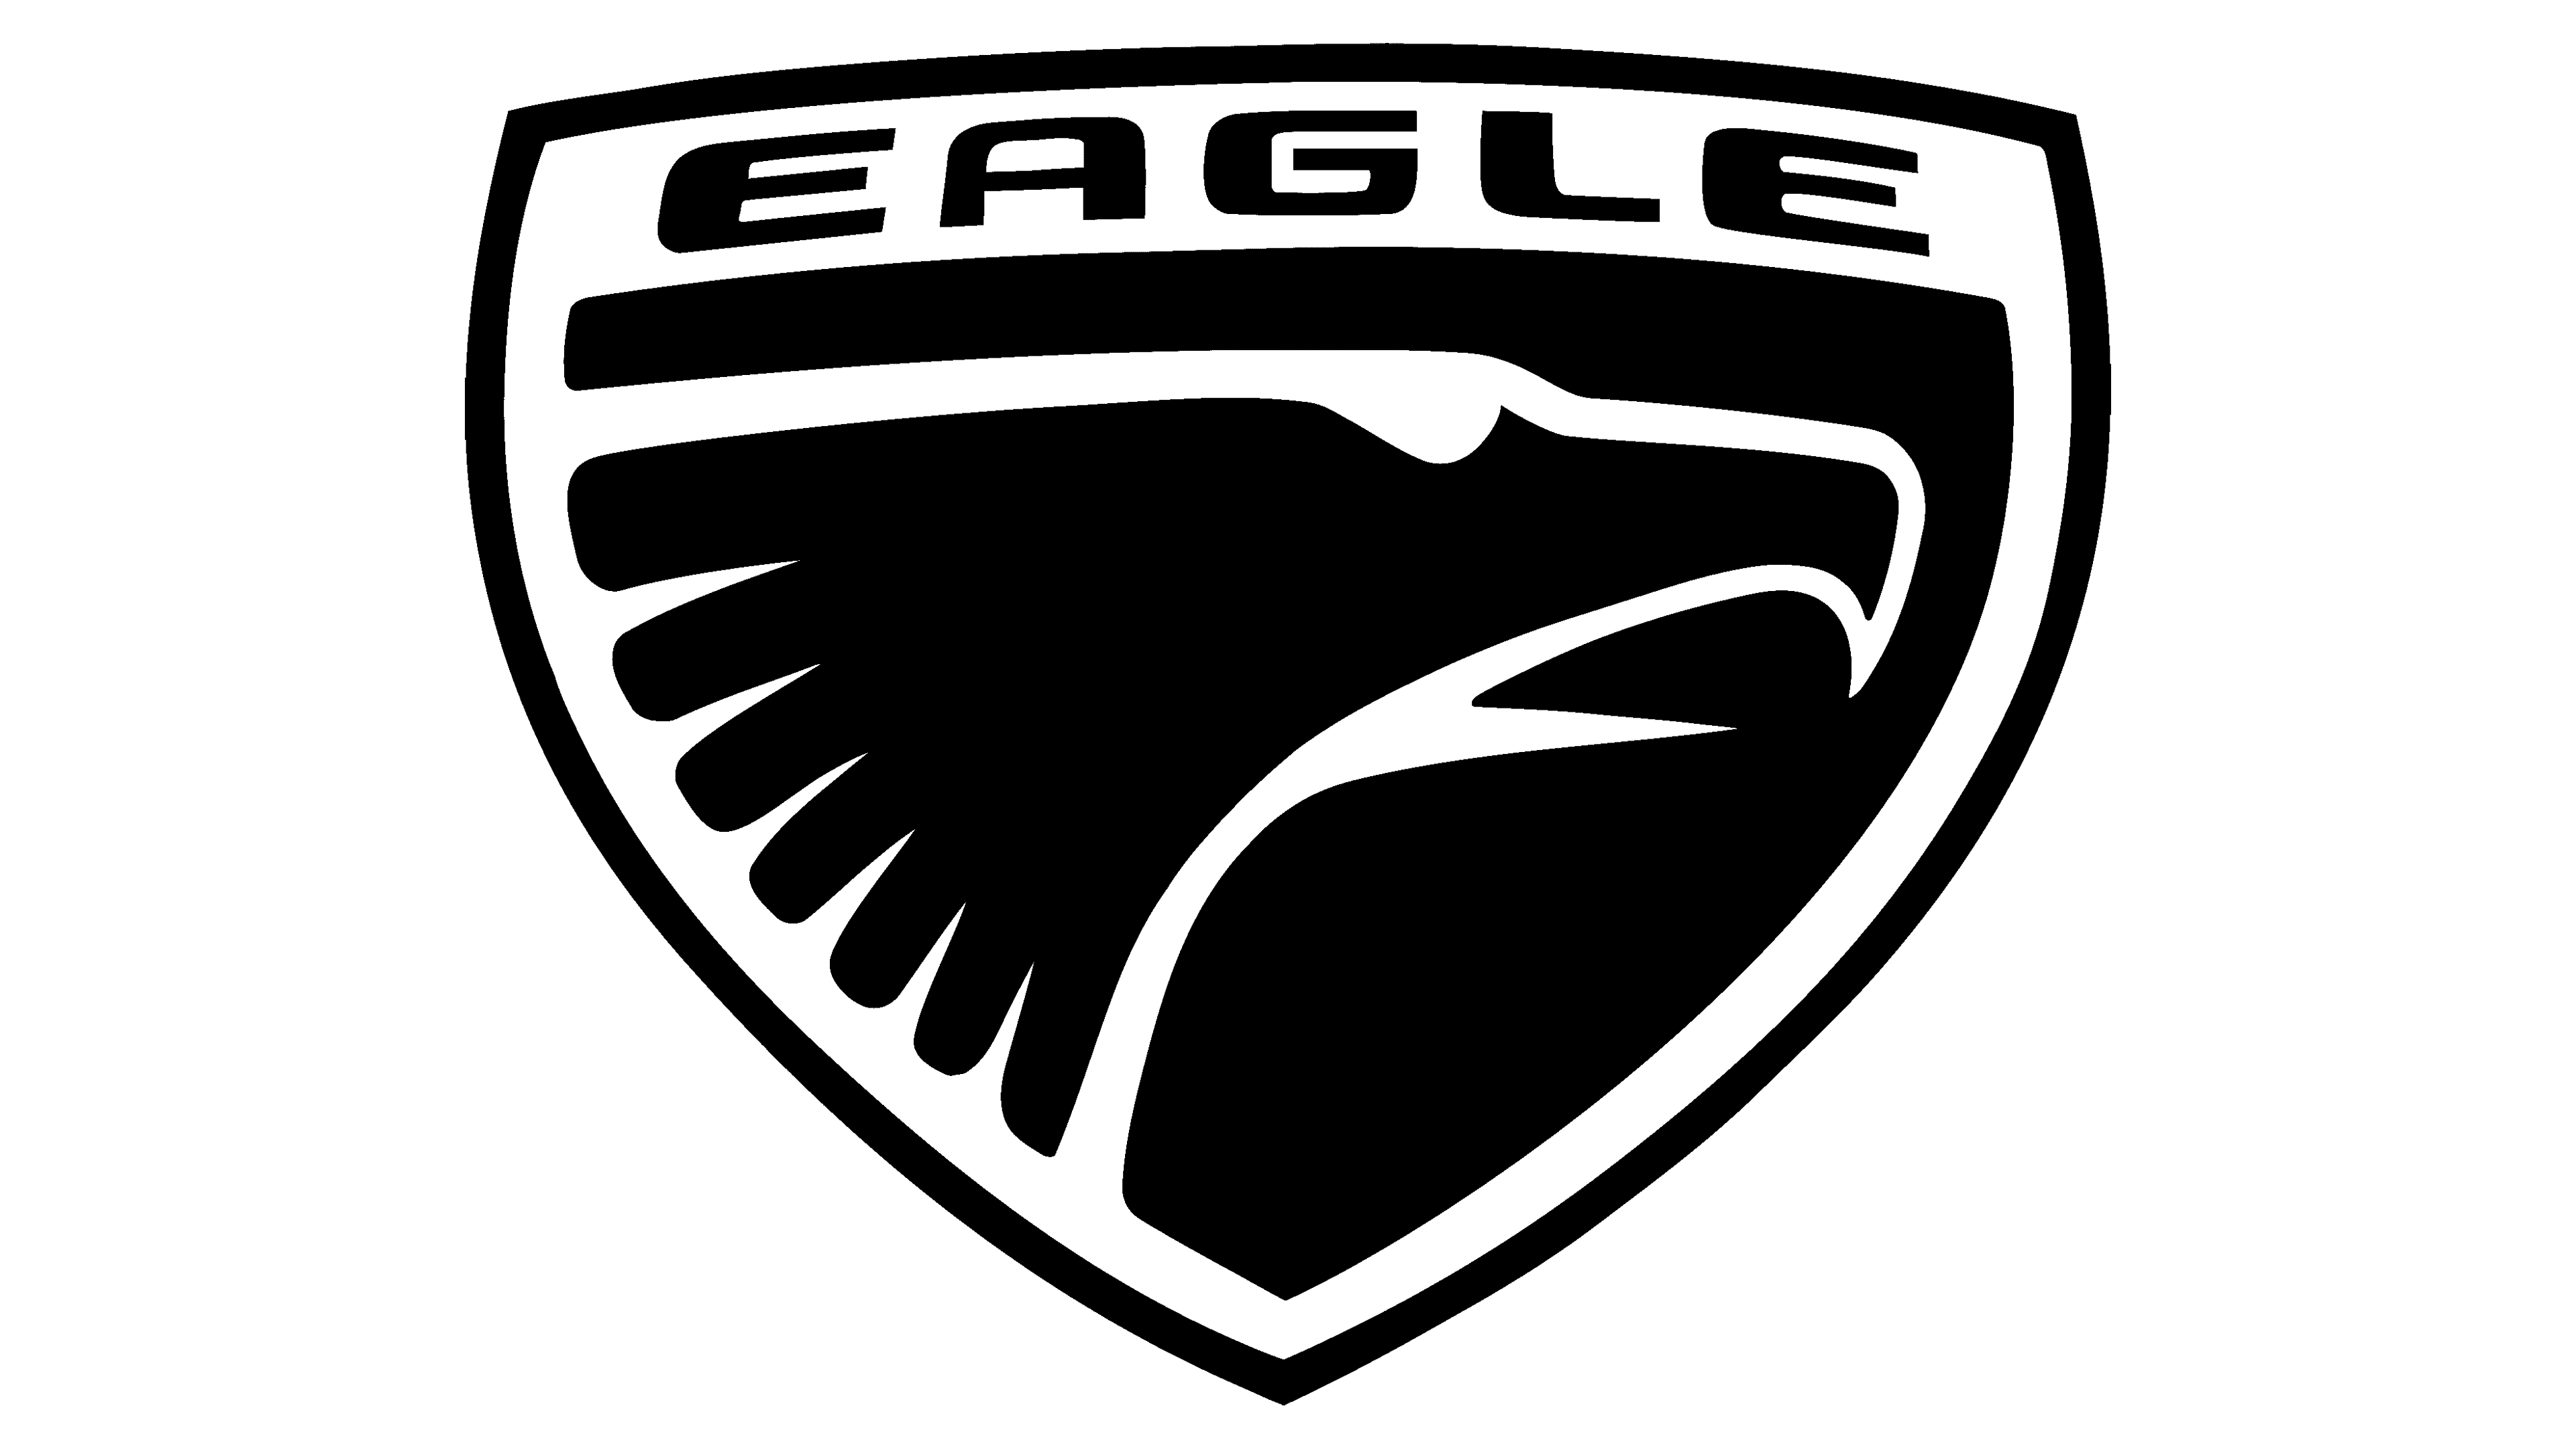 Metallic Eagle Logo Design PNG Images, Eagle, Symbol, Metal PNG Transparent  Background - Pngtree | Photo logo design, Eagle icon, V logo design